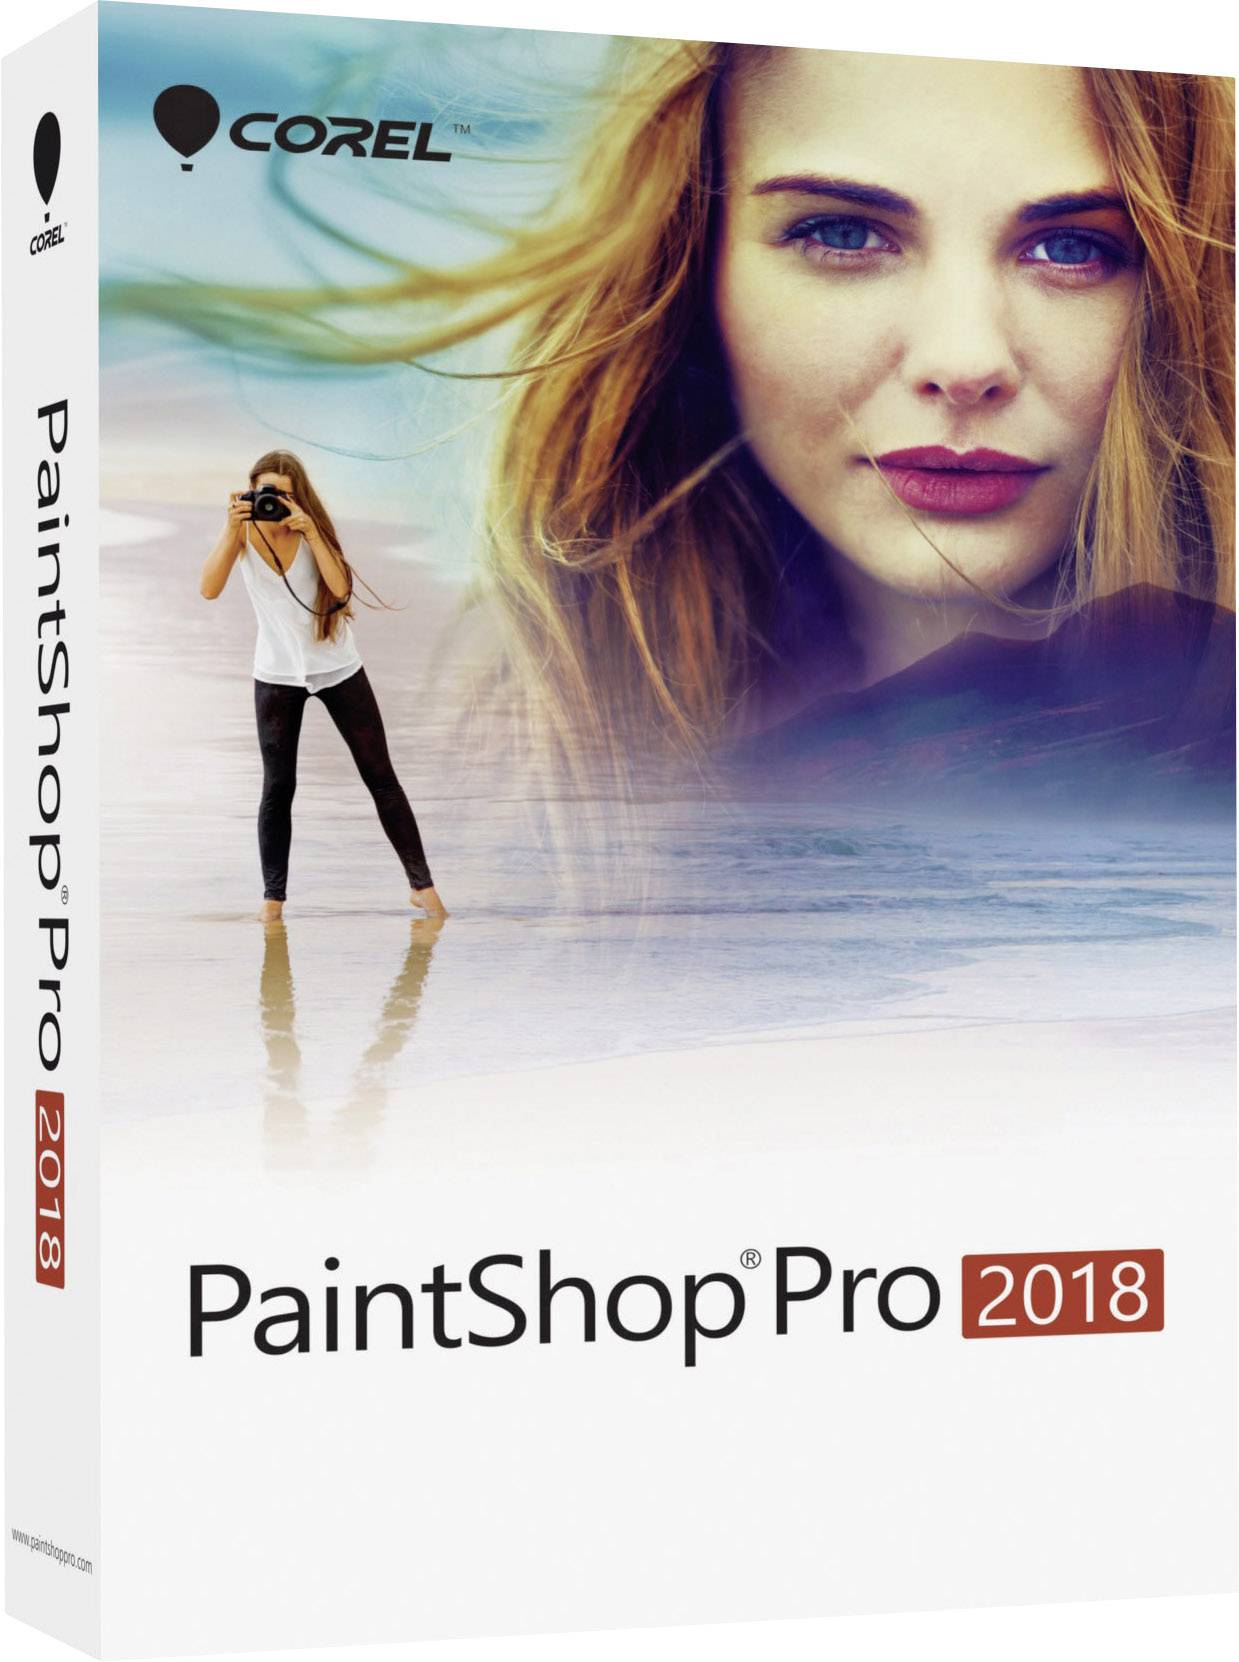 corel paintshop pro 2018 review